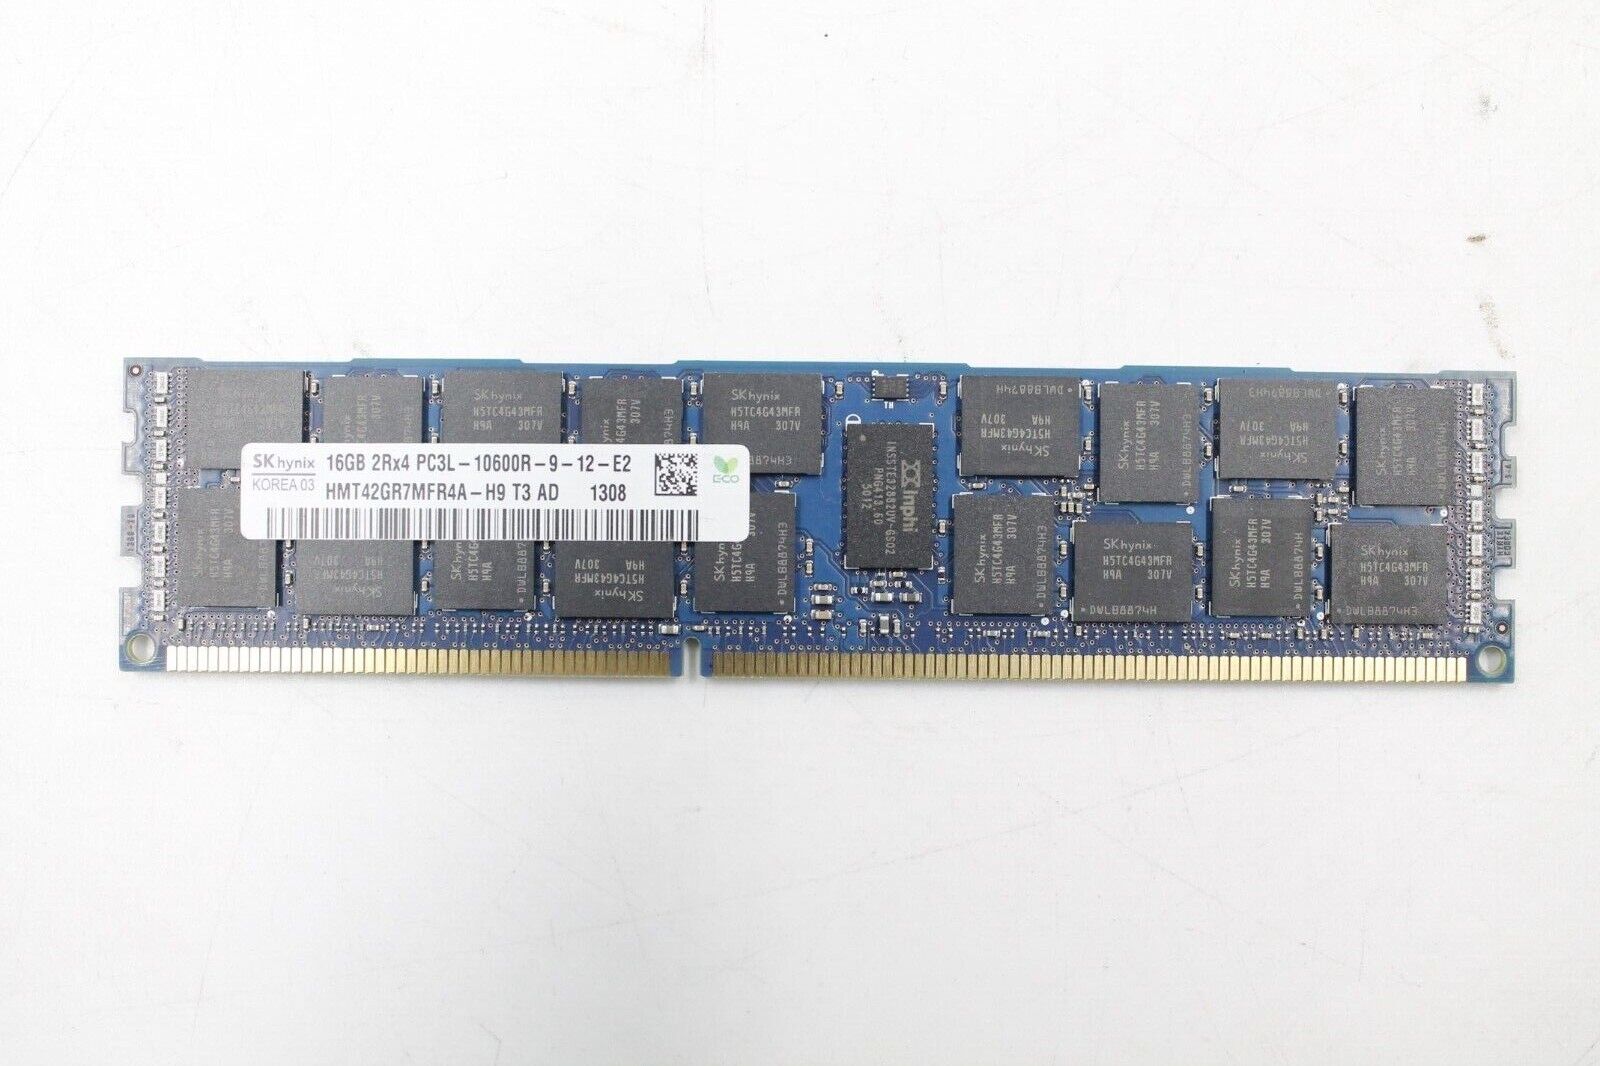 SK Hynix 16GB 2Rx4 PC3L-10600R-9-12-E2 Memory DDR